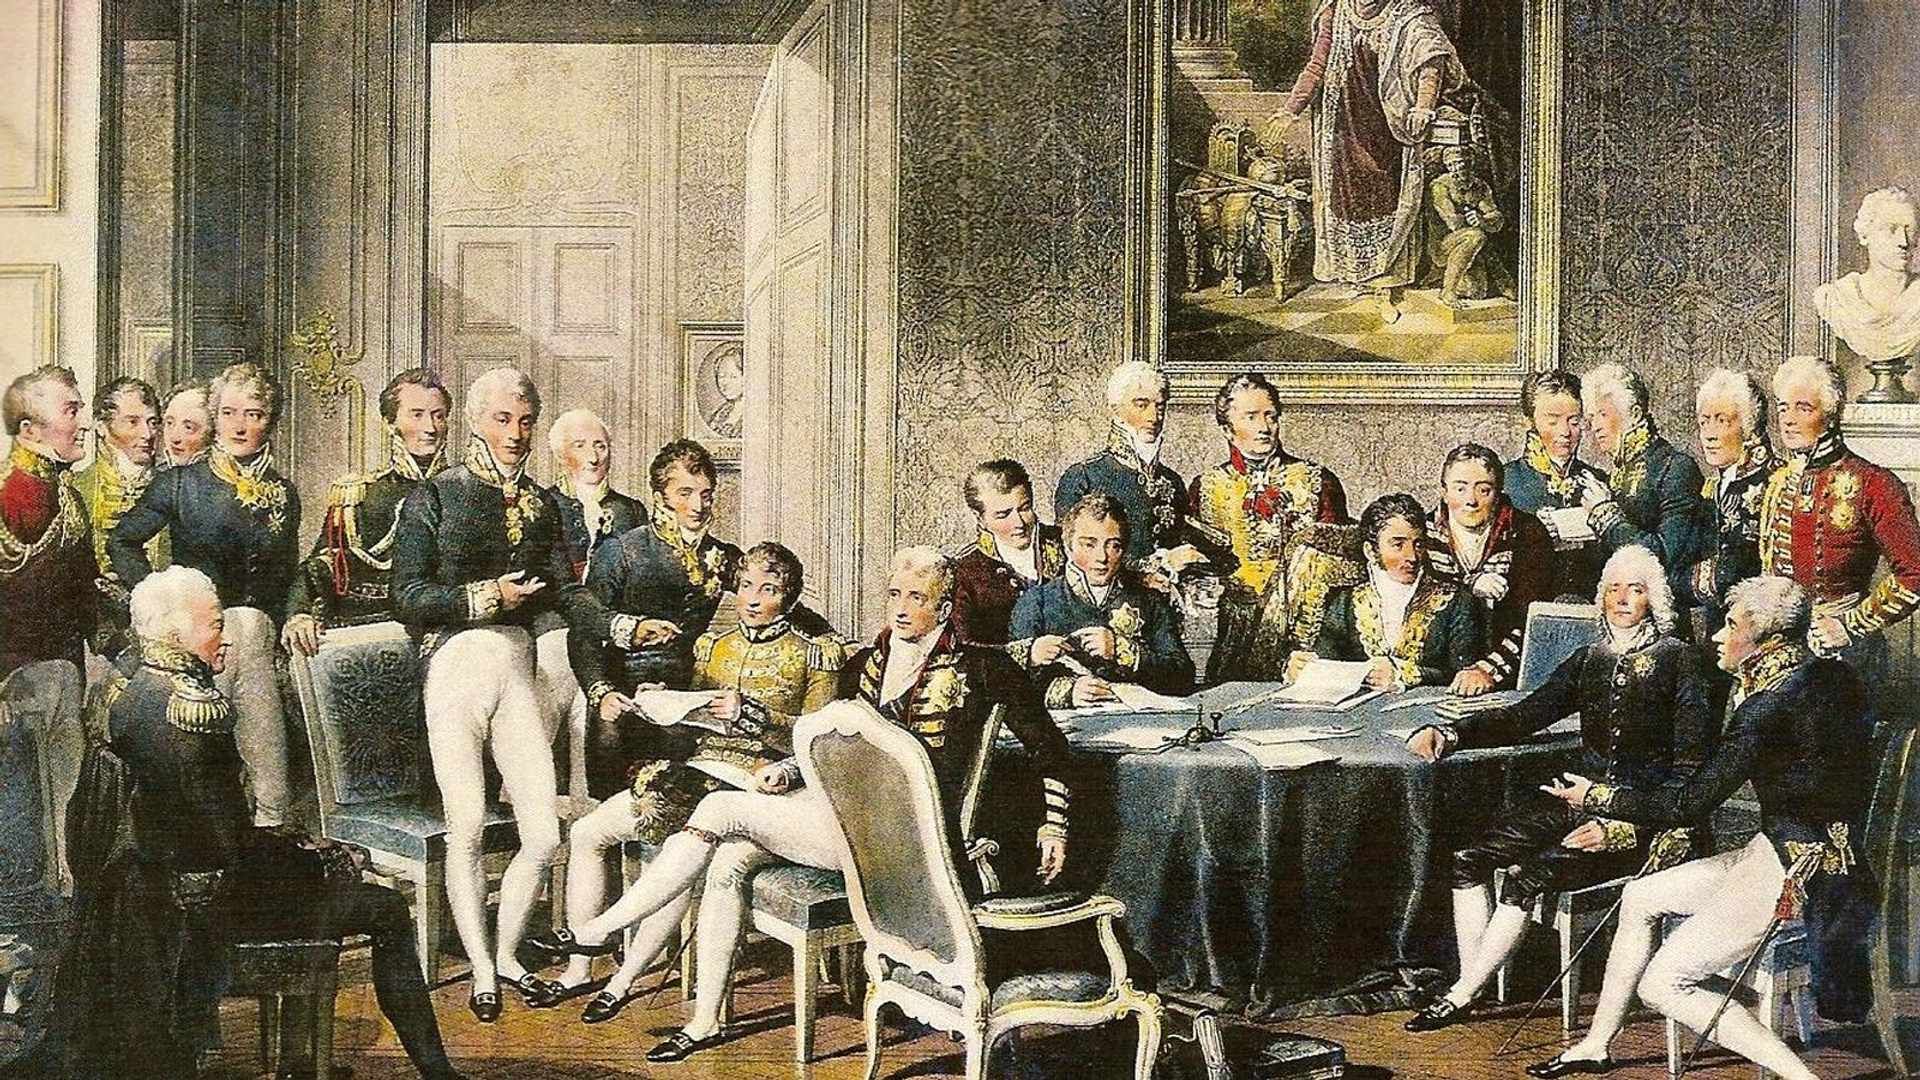 Délégués des puissances européennes en discussion politique au Congrès de Vienne, dans une gravure de Jean-Baptiste Isabey.